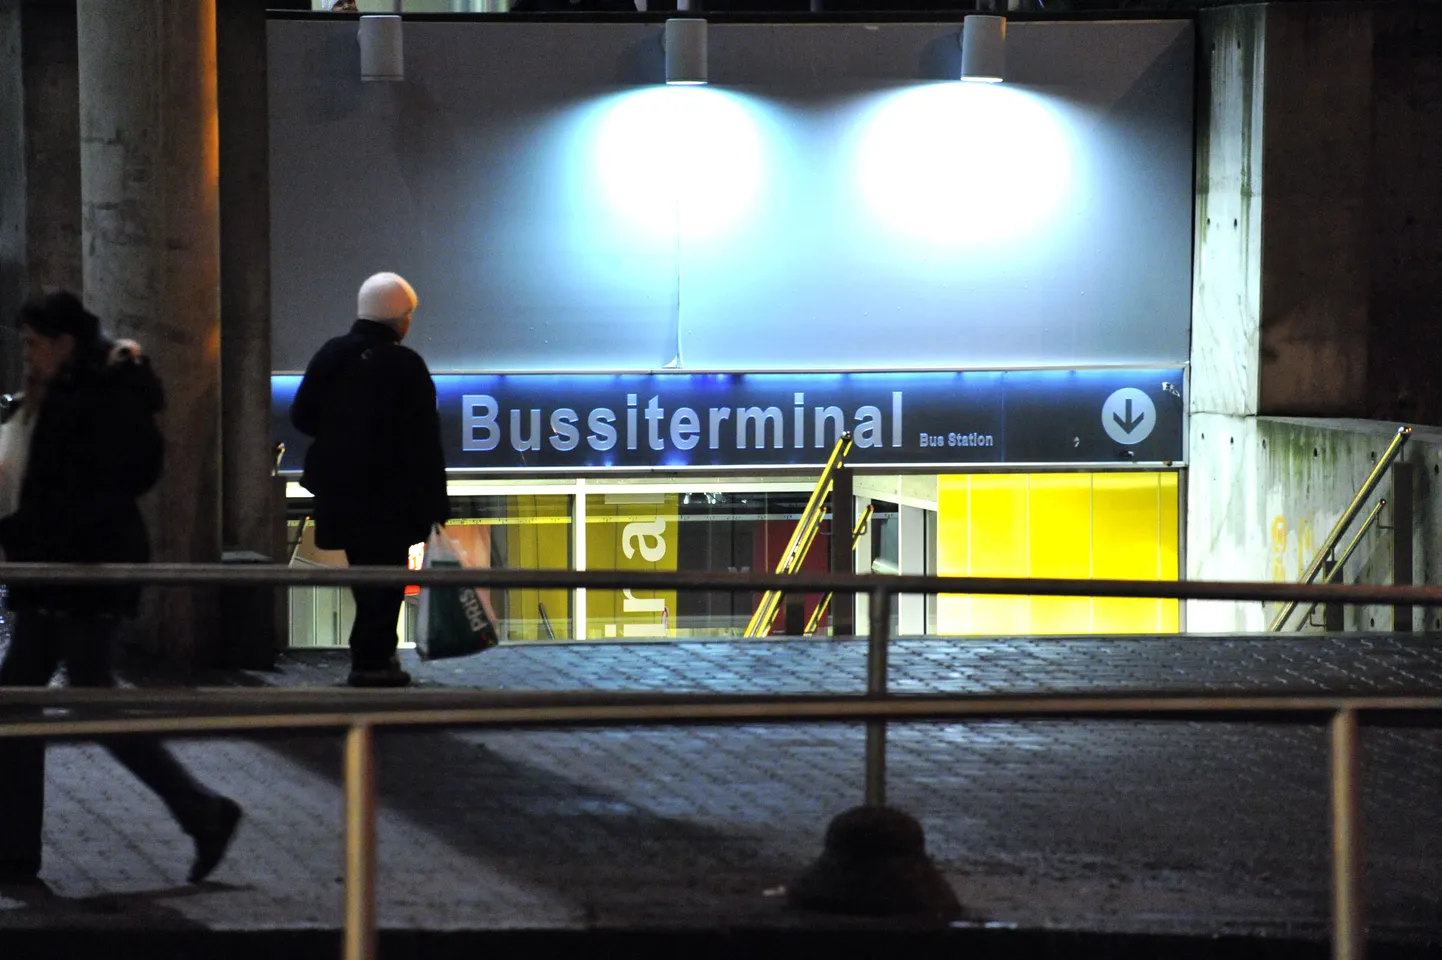 Помимо автобусного терминала, информационные табло появятся еще на шести остановках в Таллинне